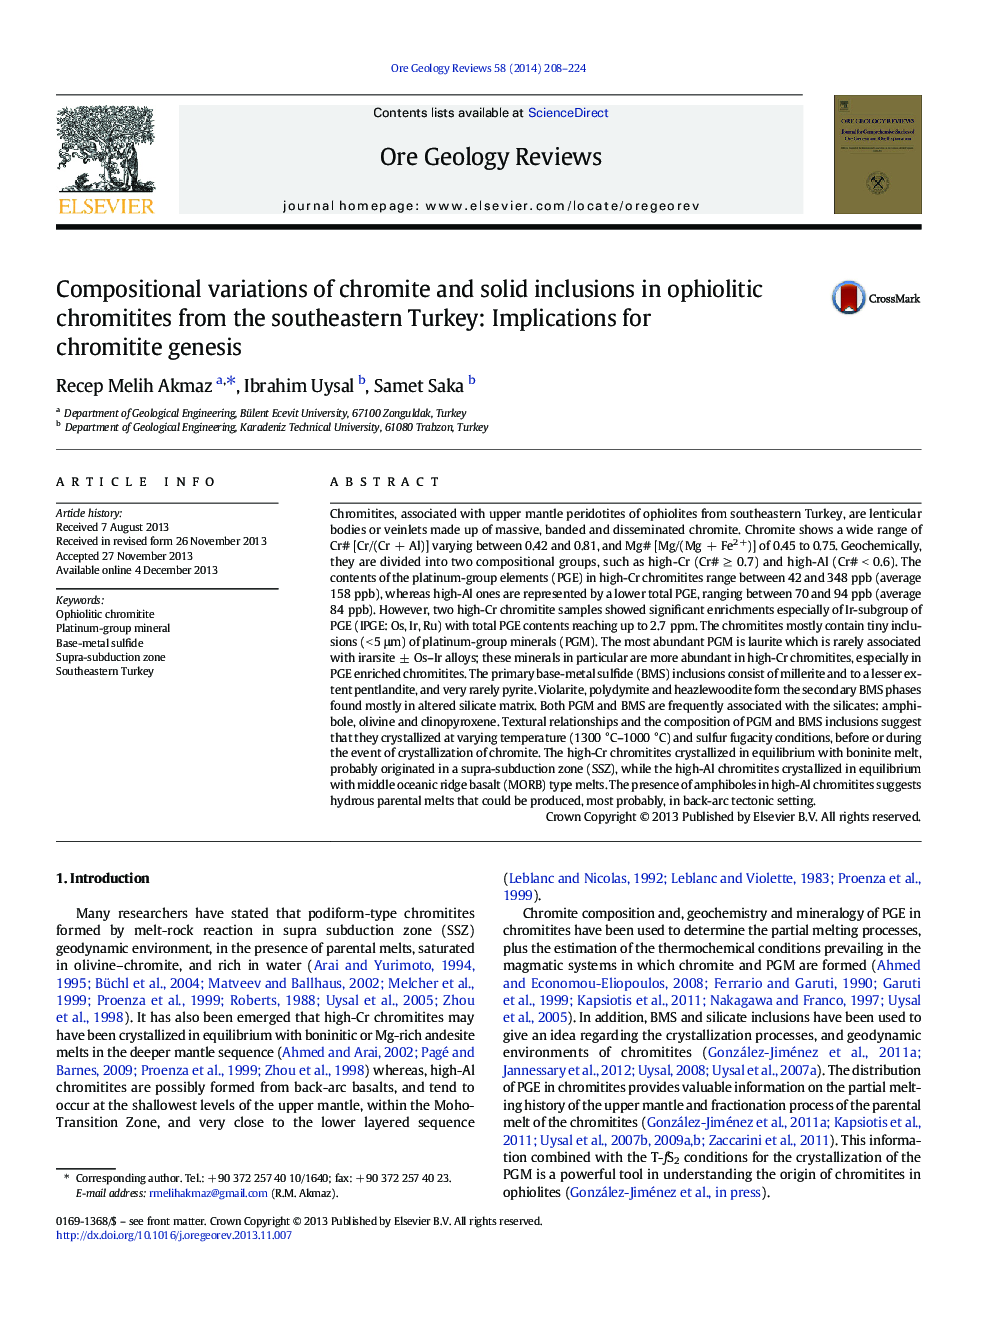 تغییرات ترکیبات کرومیت و جامد در کرومیتیت های افیولیتی از جنوب شرقی ترکیه: پیامدهای ژنتیکی کرومیتیت 